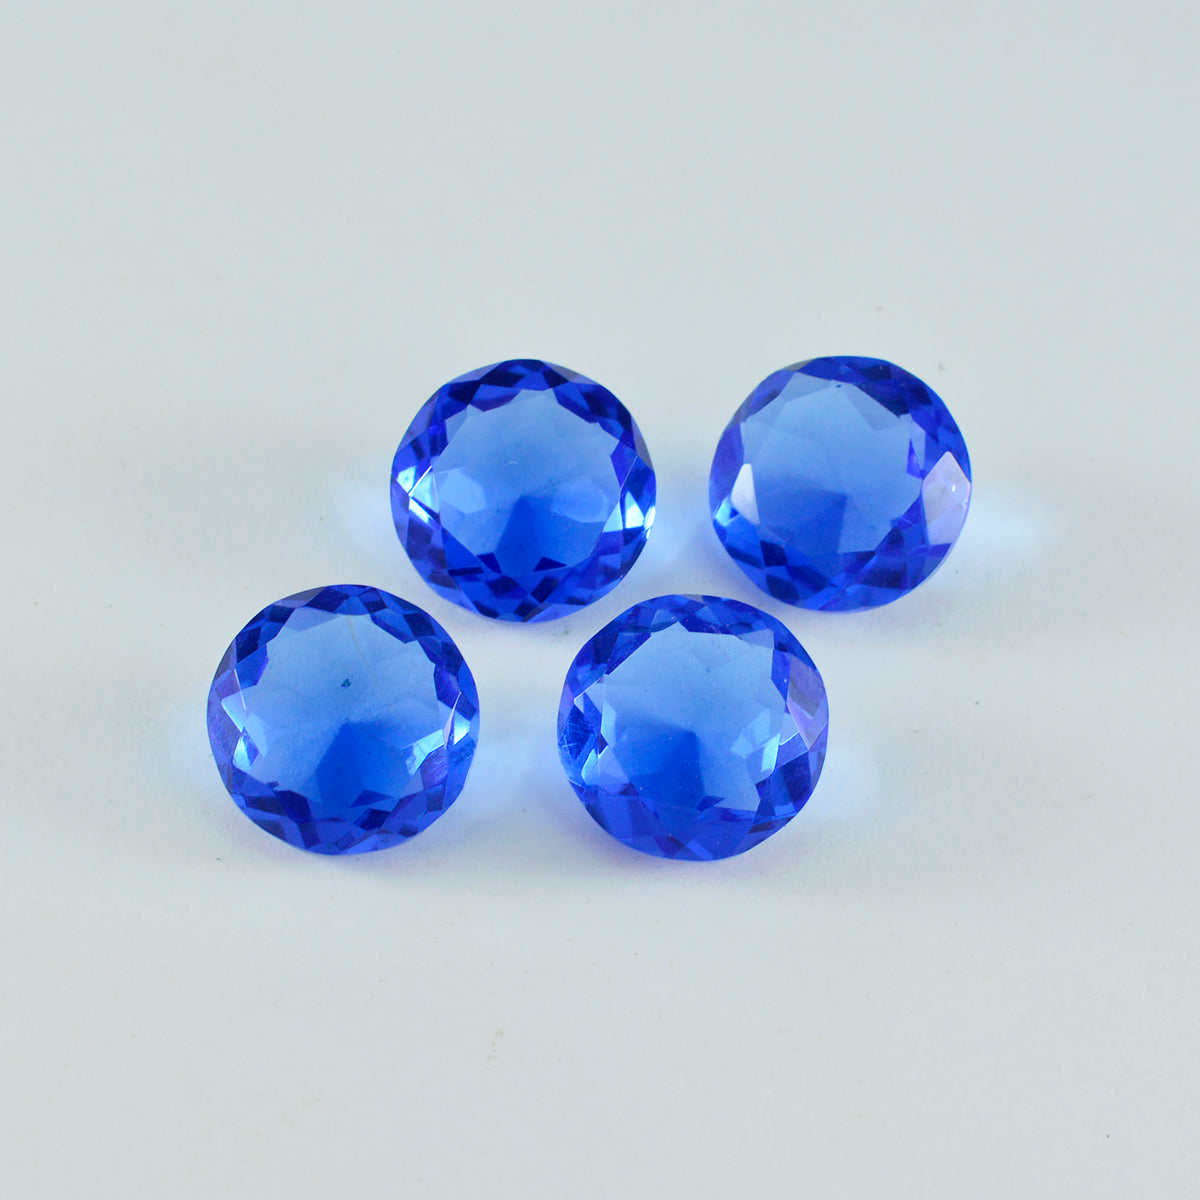 riyogems 1шт синий сапфир cz ограненный 15х15 мм круглая форма + качество сыпучий драгоценный камень